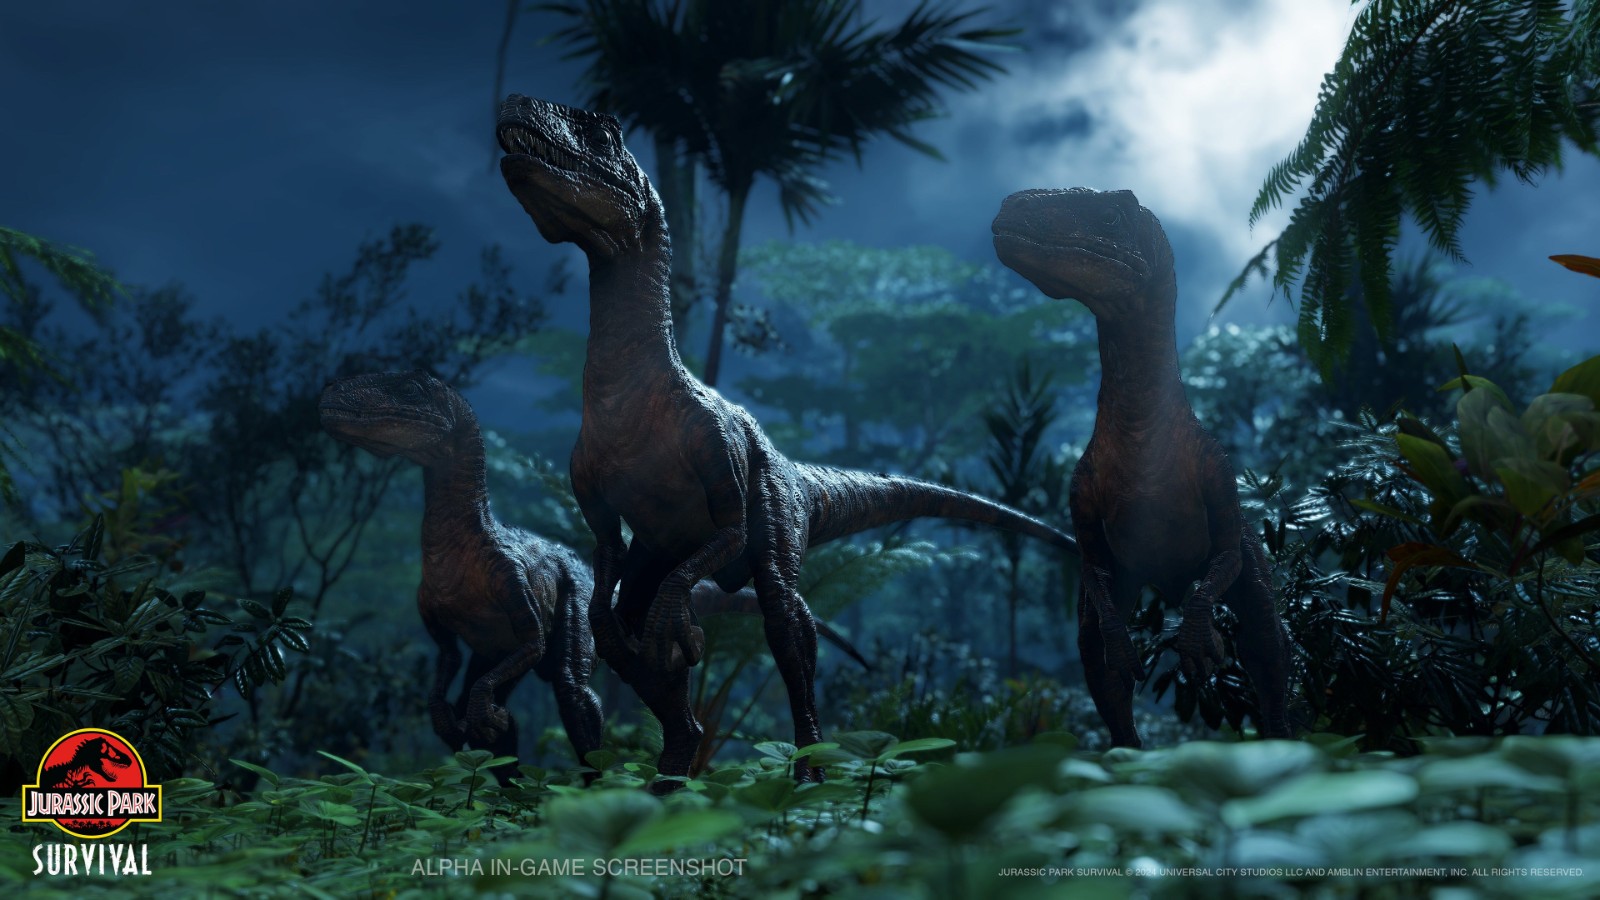 《侏罗纪公园:生存》首批实机内容截图展示